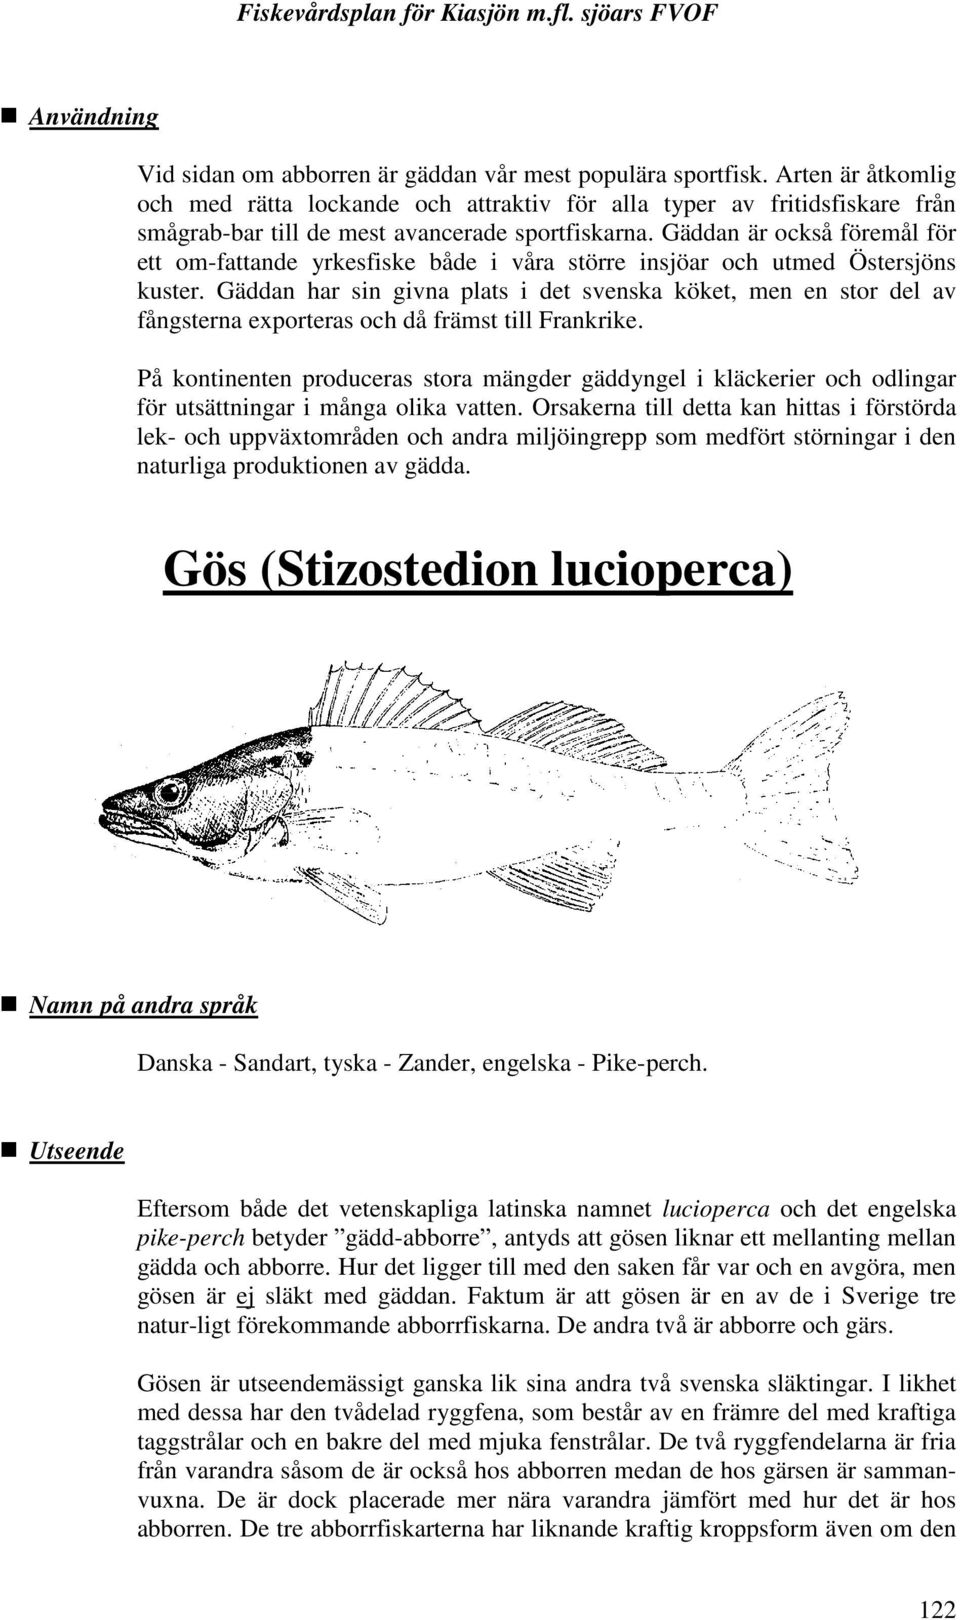 Gäddan är också föremål för ett om-fattande yrkesfiske både i våra större insjöar och utmed Östersjöns kuster.